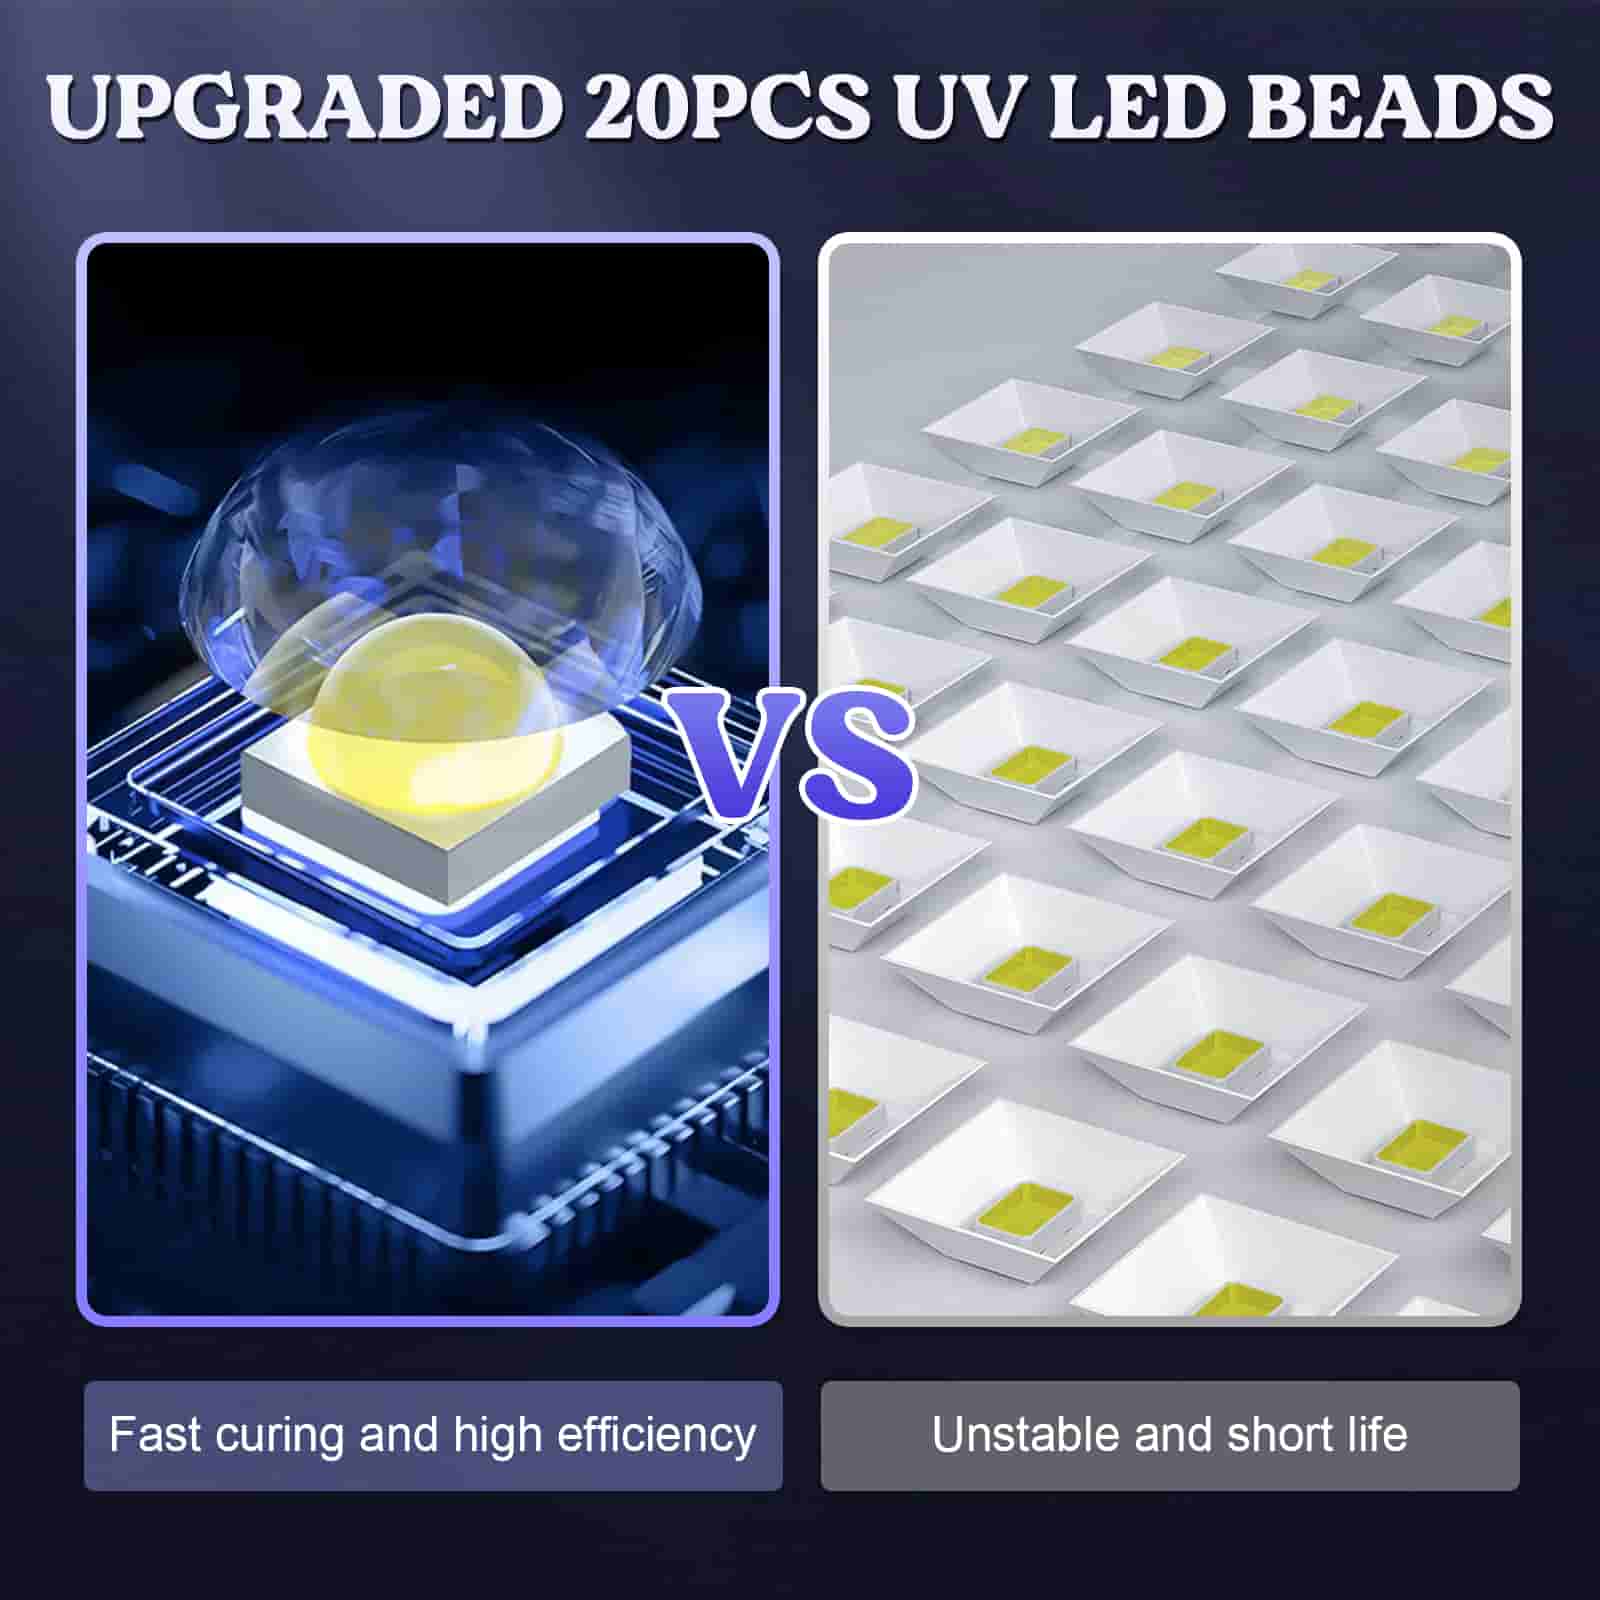 Let's Resin UV Light for Resin, Large Size Portable UV Resin Light, Fast  Curing&143g Light Weight UV Lamp 